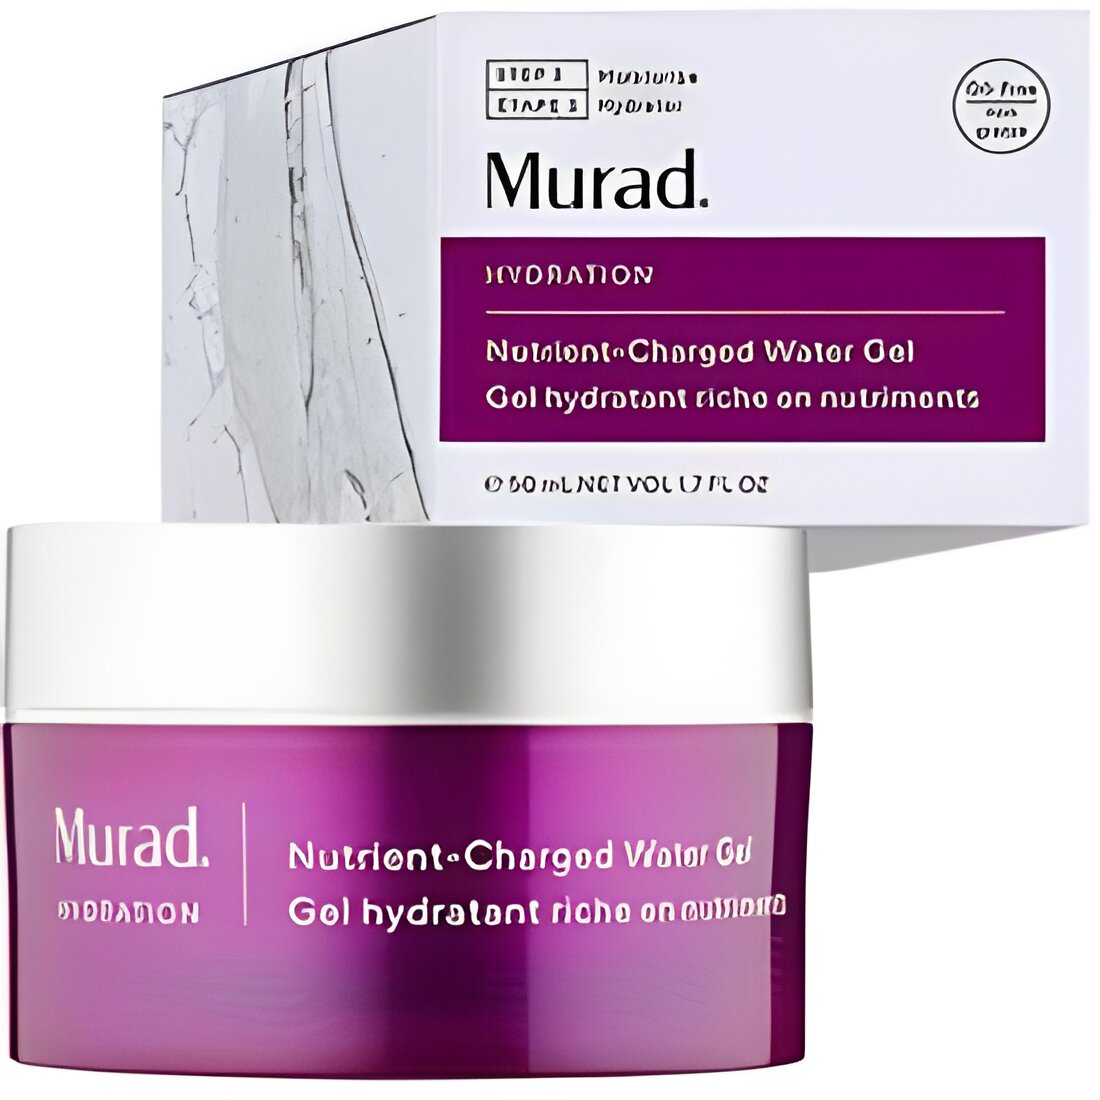 Free Murad Nutrient-Charged Water Gel